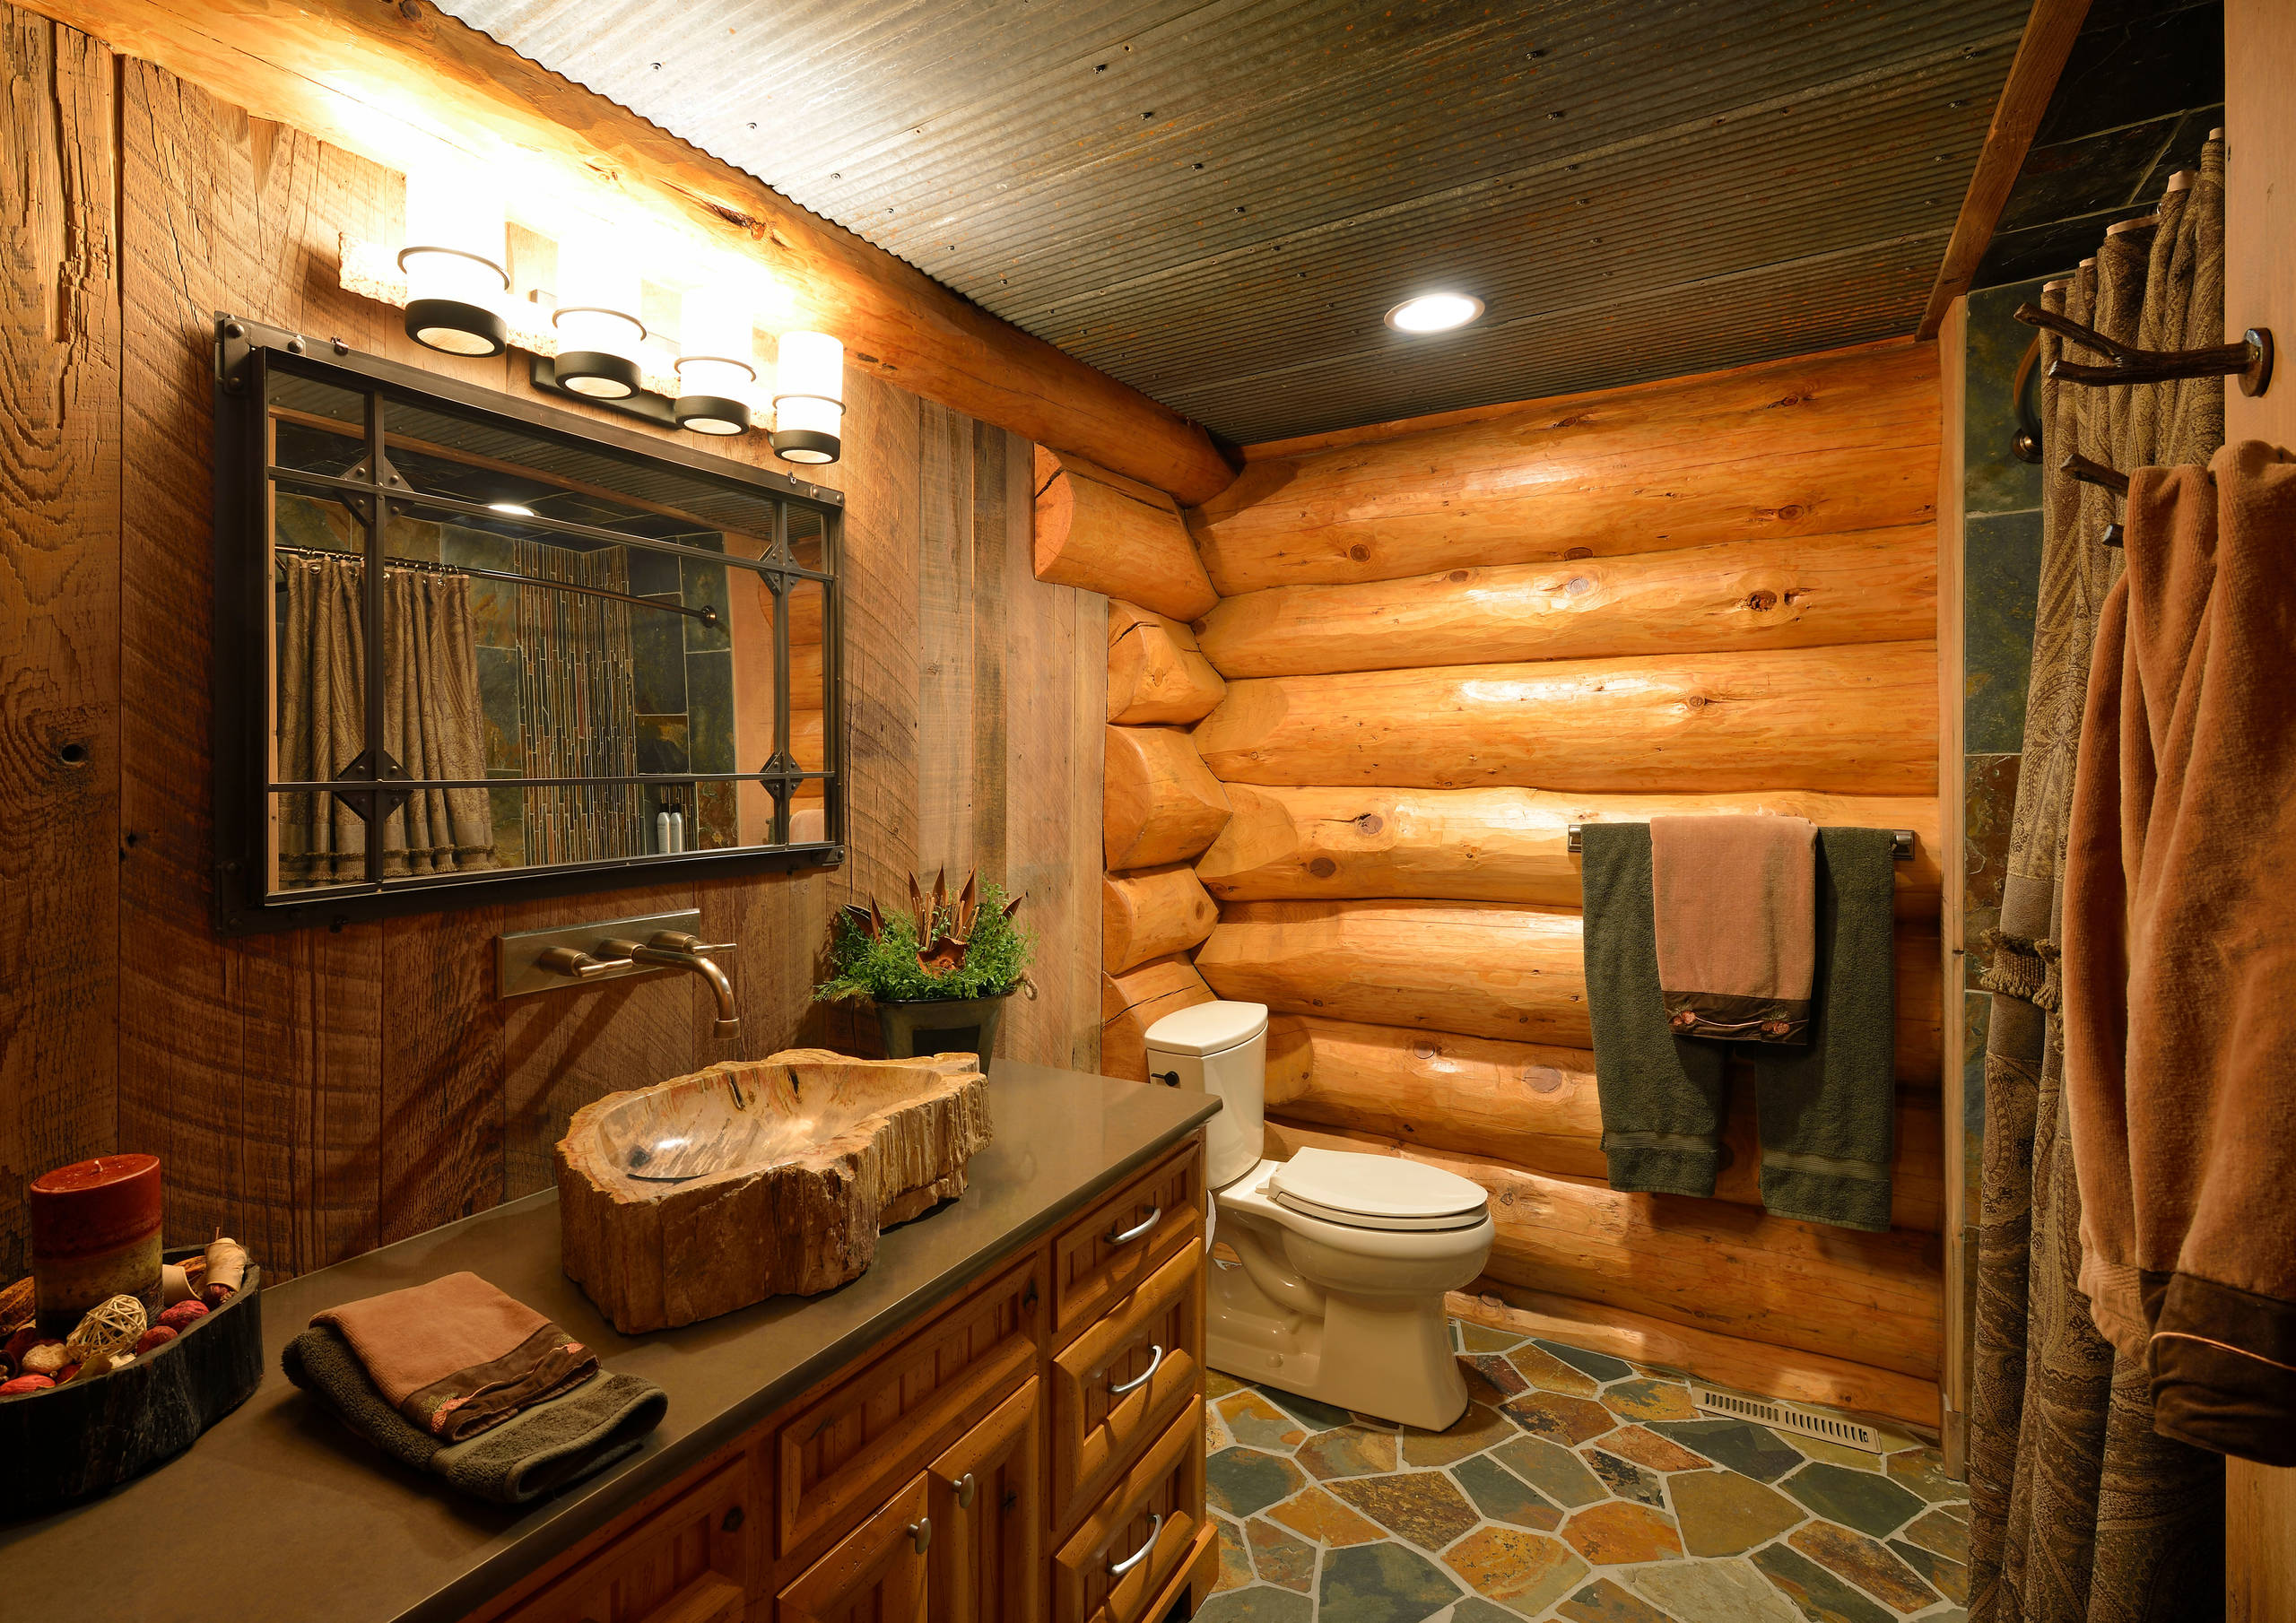 Ванная комната в деревянном доме фото.